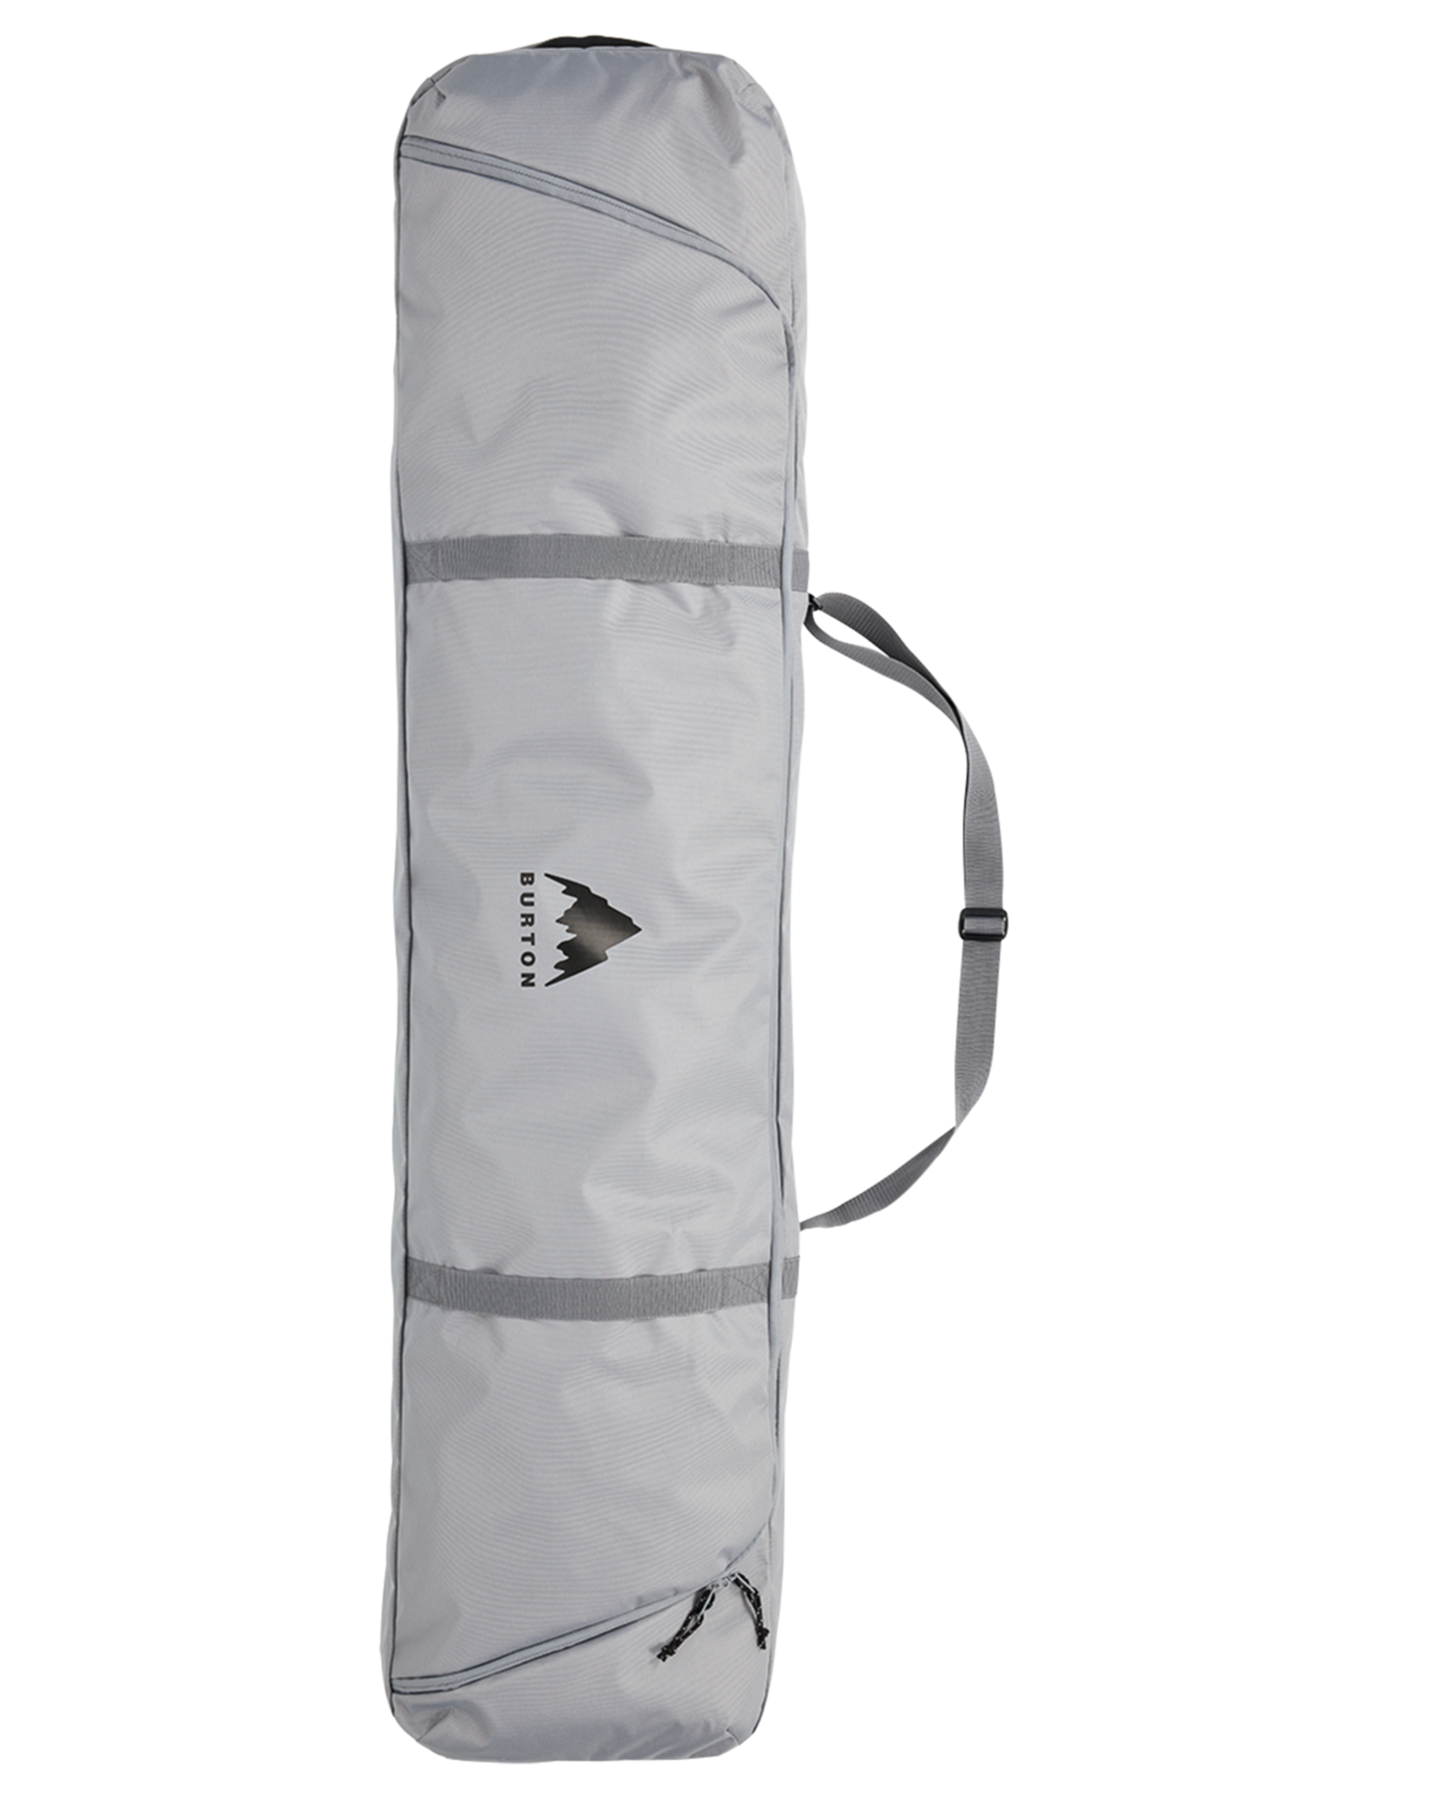 Burton Space Sack Board Bag - Sharkskin Snowboard Bags - Trojan Wake Ski Snow